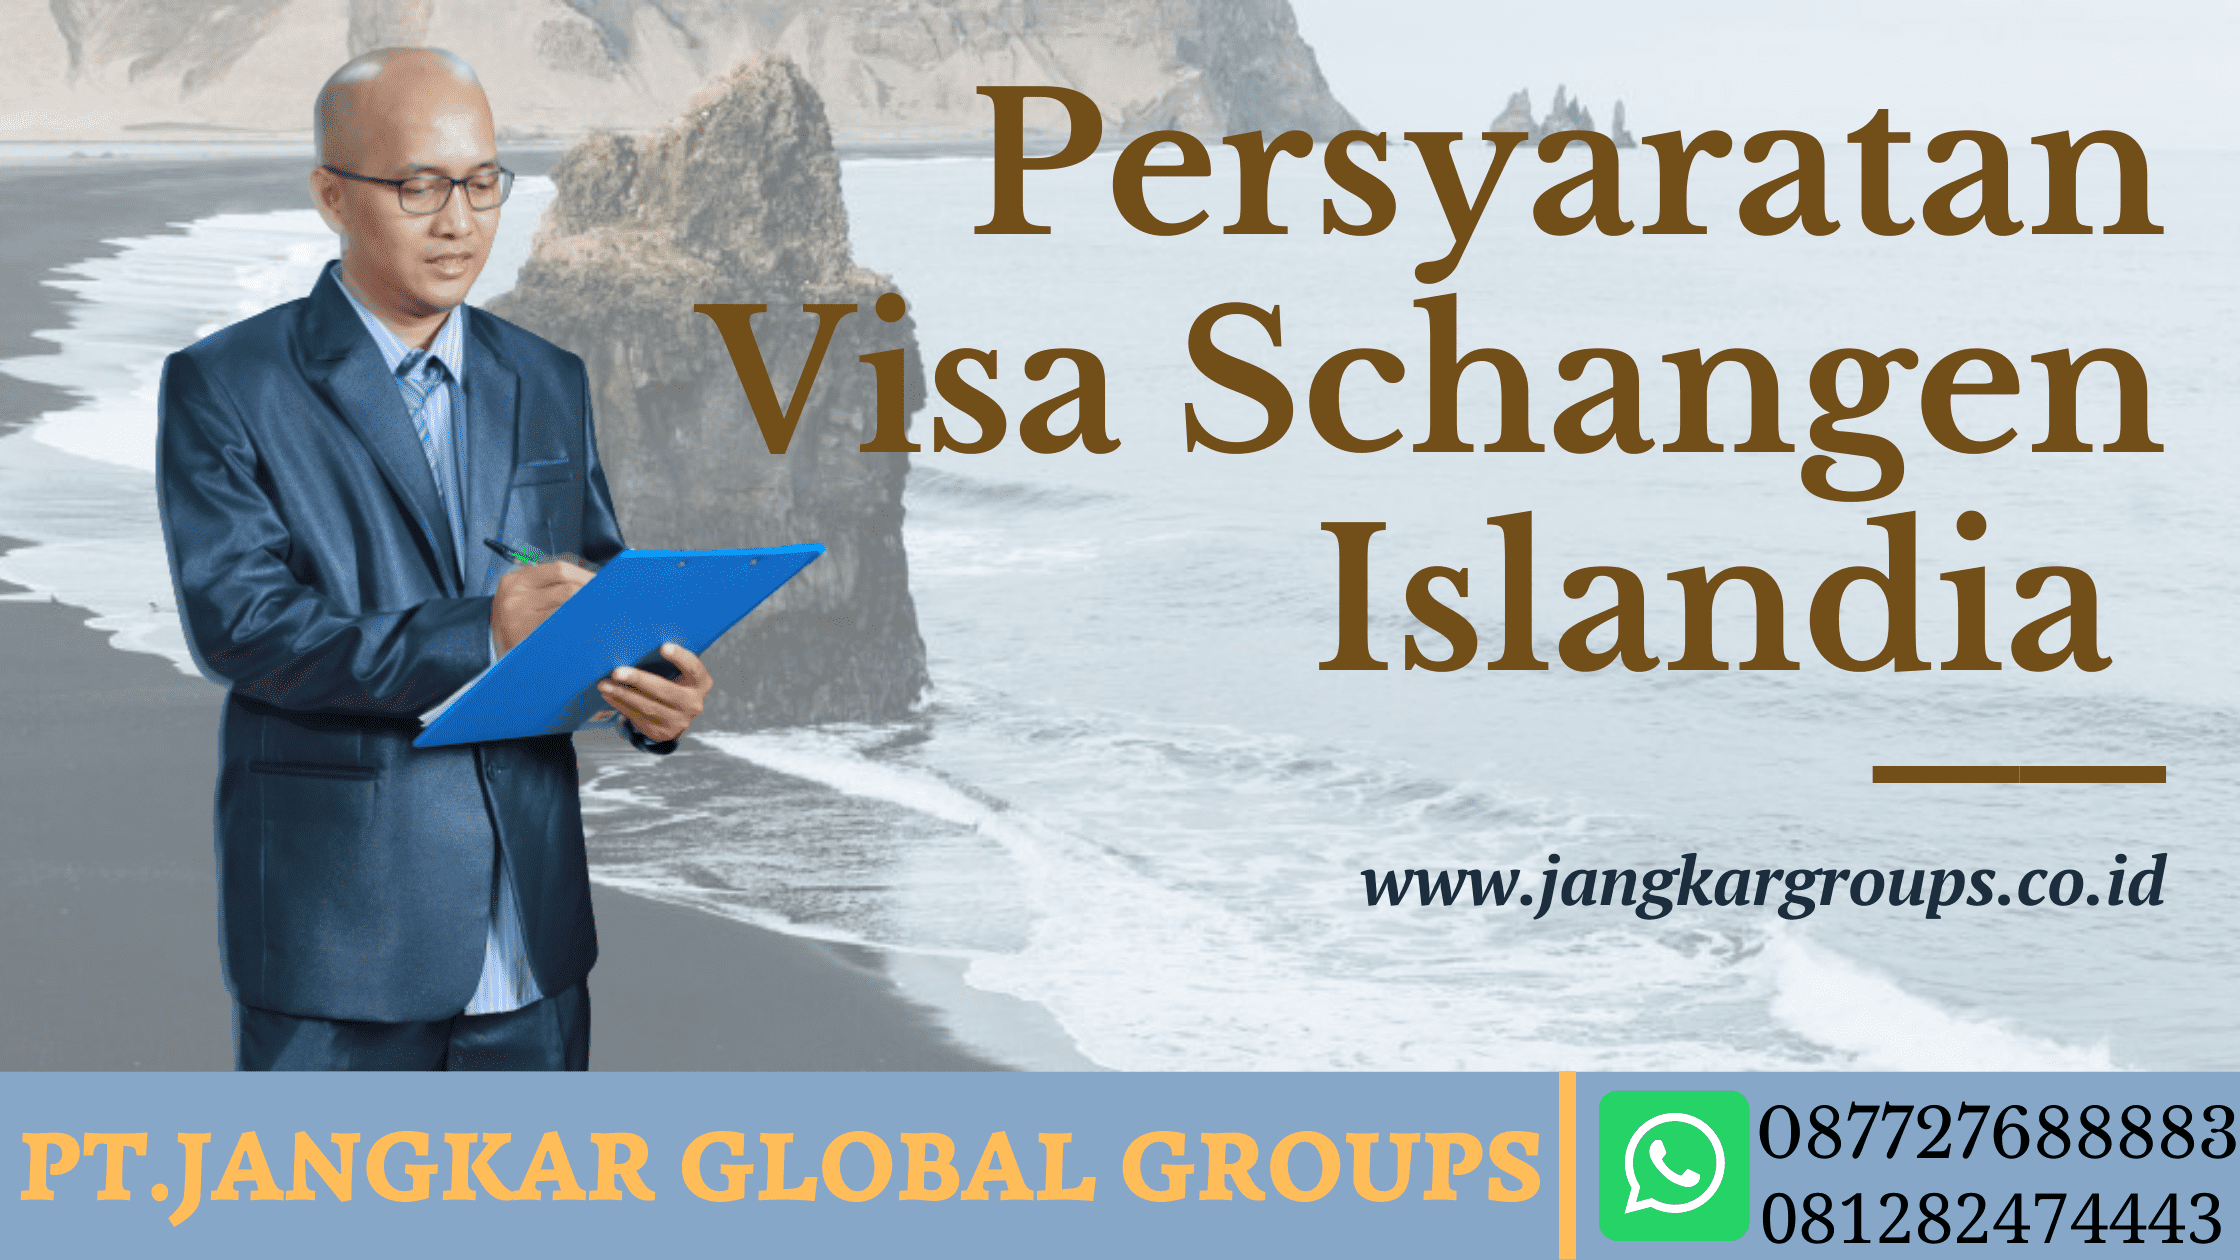 Persyaratan Visa Schengen Iceland